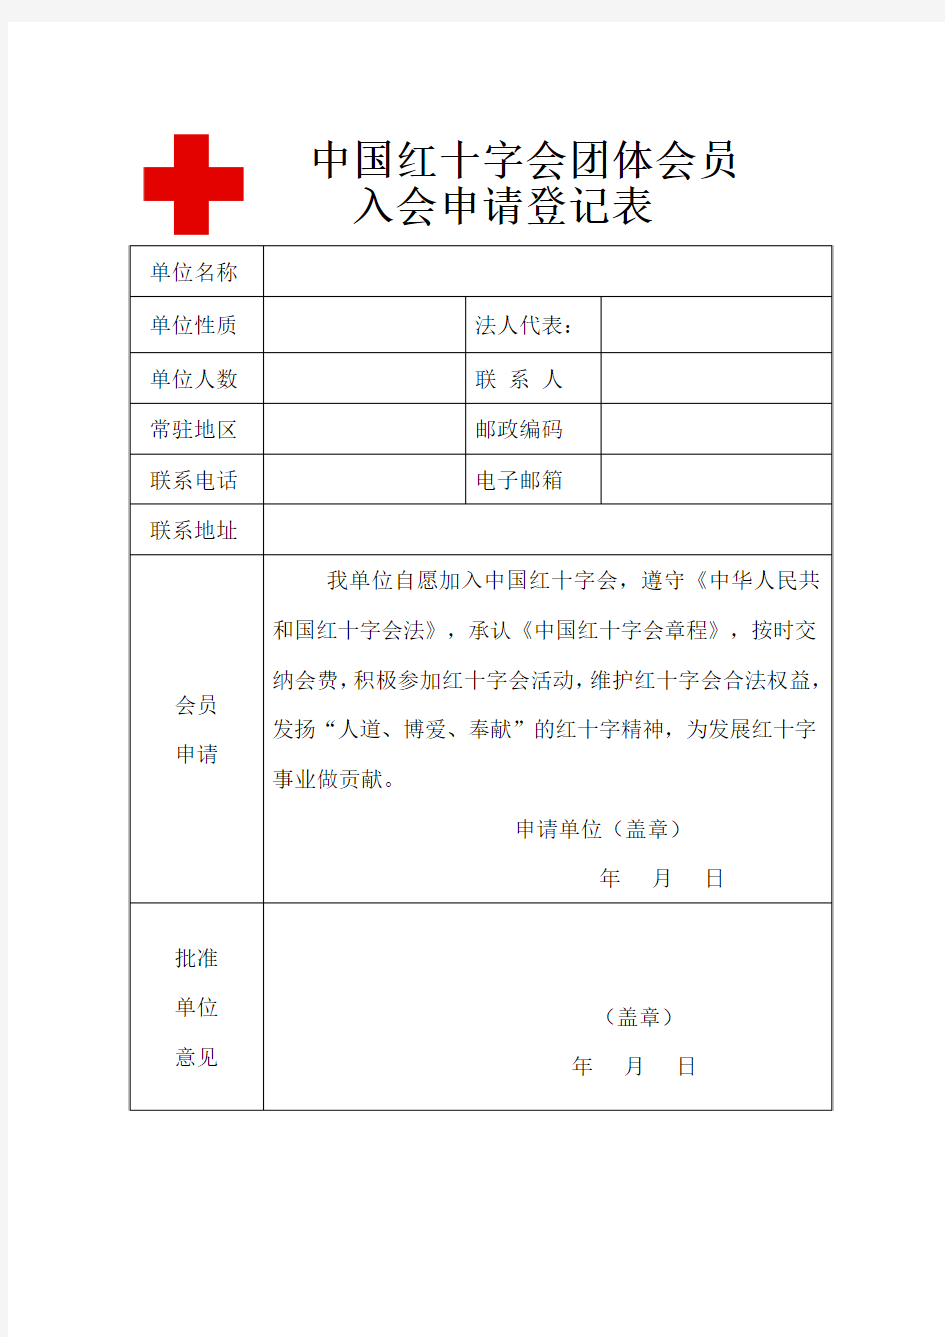 中国红十字会团体会员入会申请表